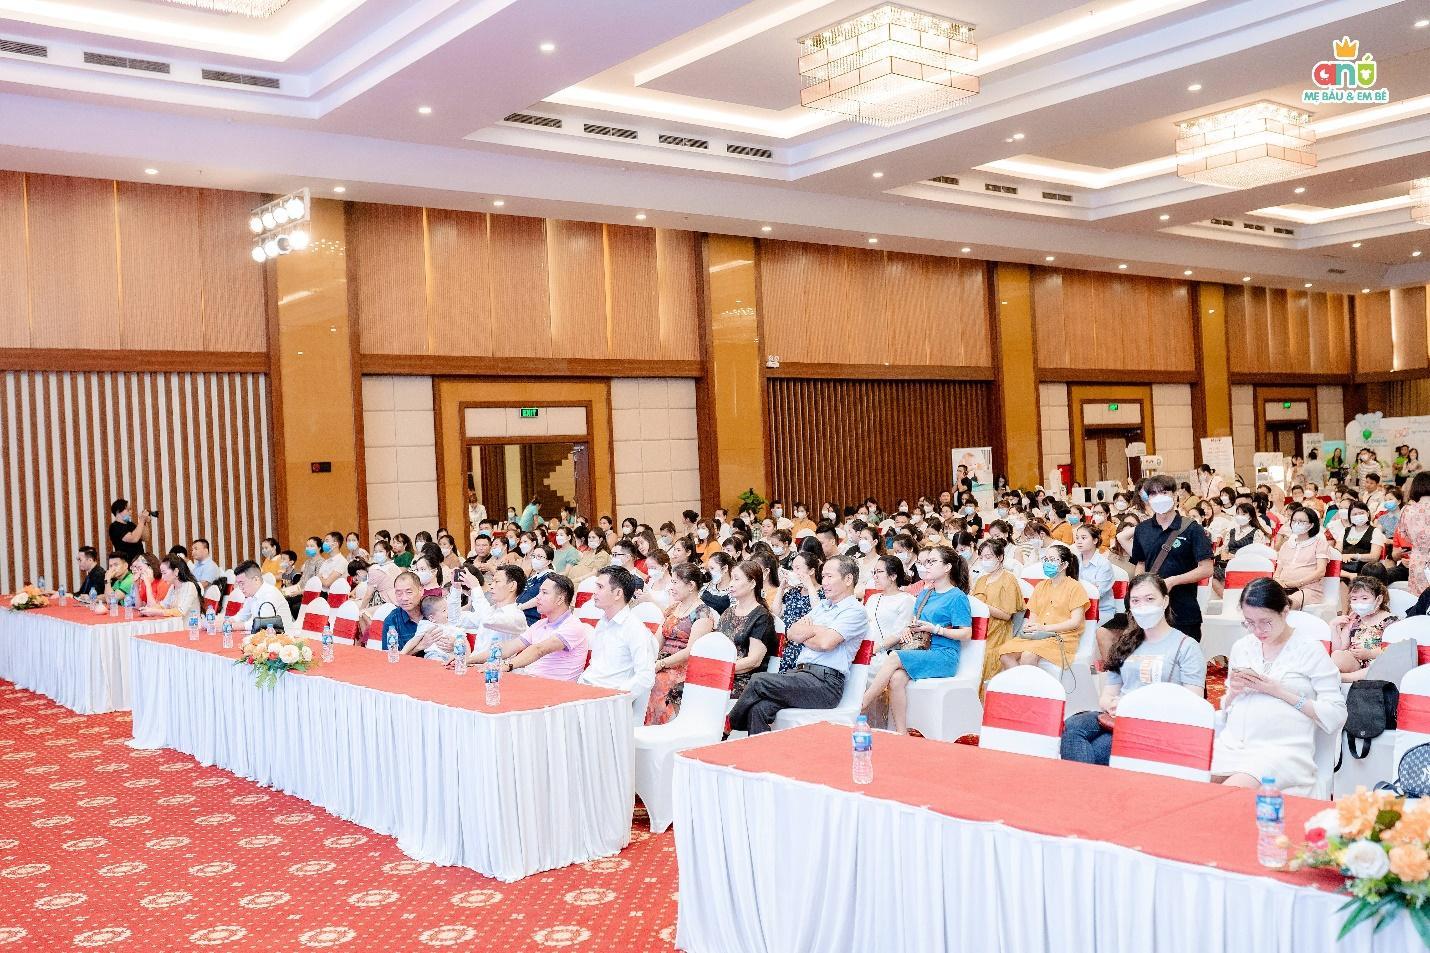 Hội thảo tiền sản miễn phí quy mô lớn được tổ chức bởi hệ thống mẹ & bé hàng đầu Bắc Ninh - Ảnh 1.